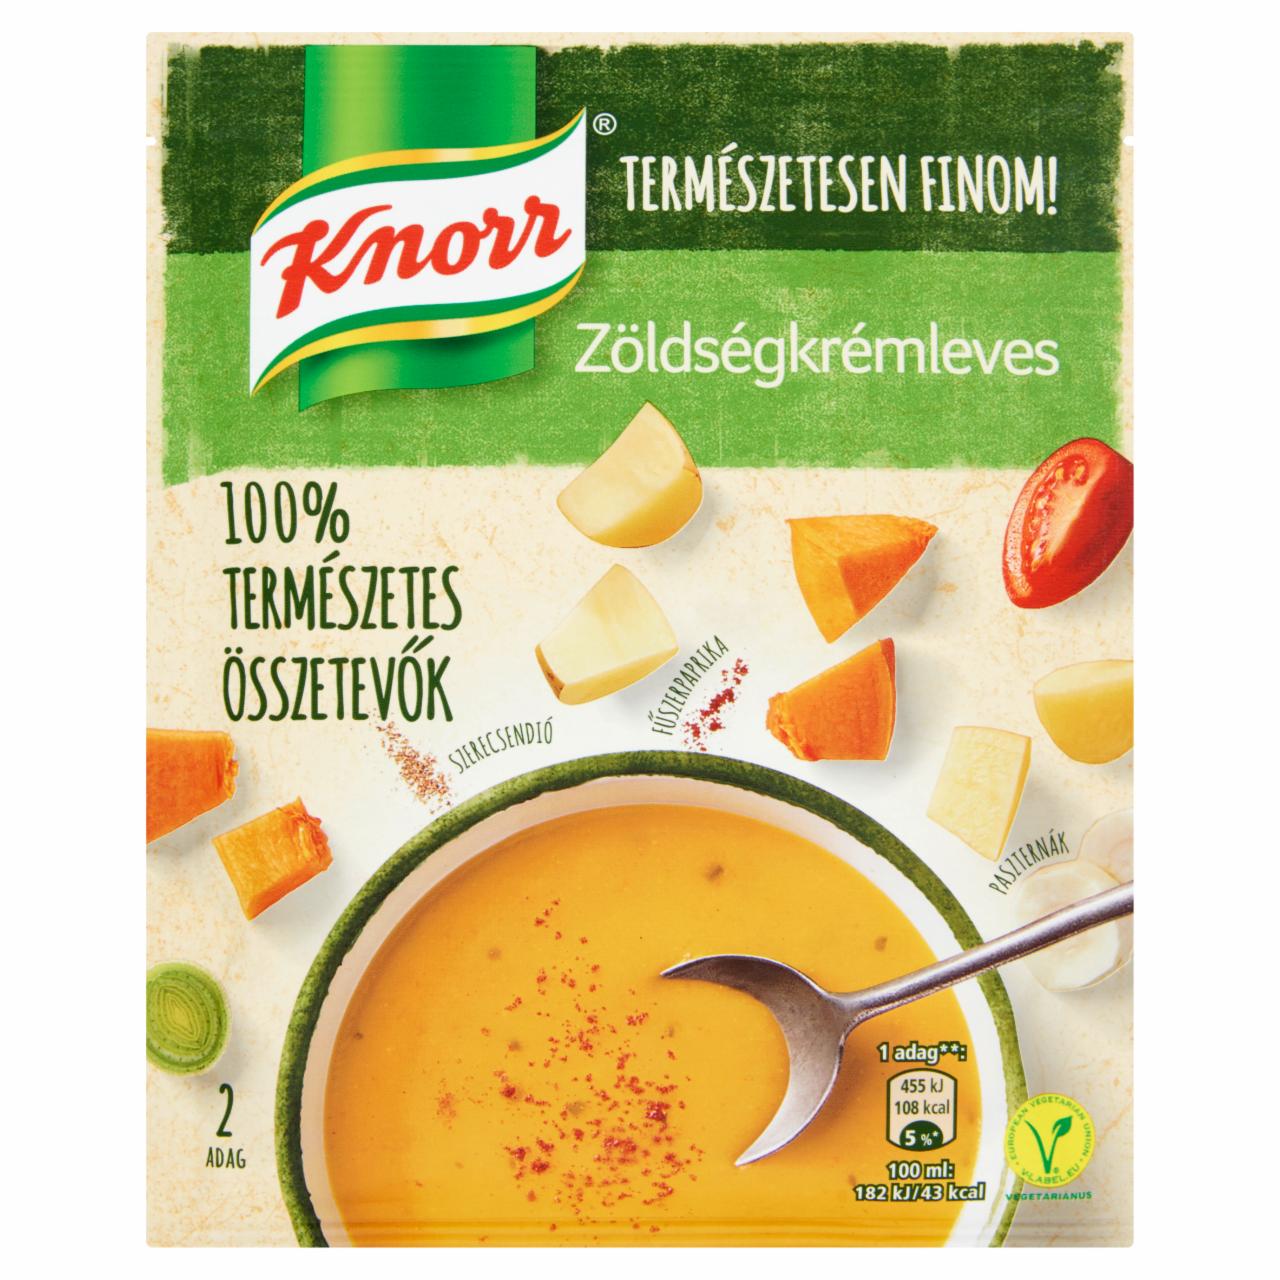 Képek - Knorr zöldségkrémleves 62 g